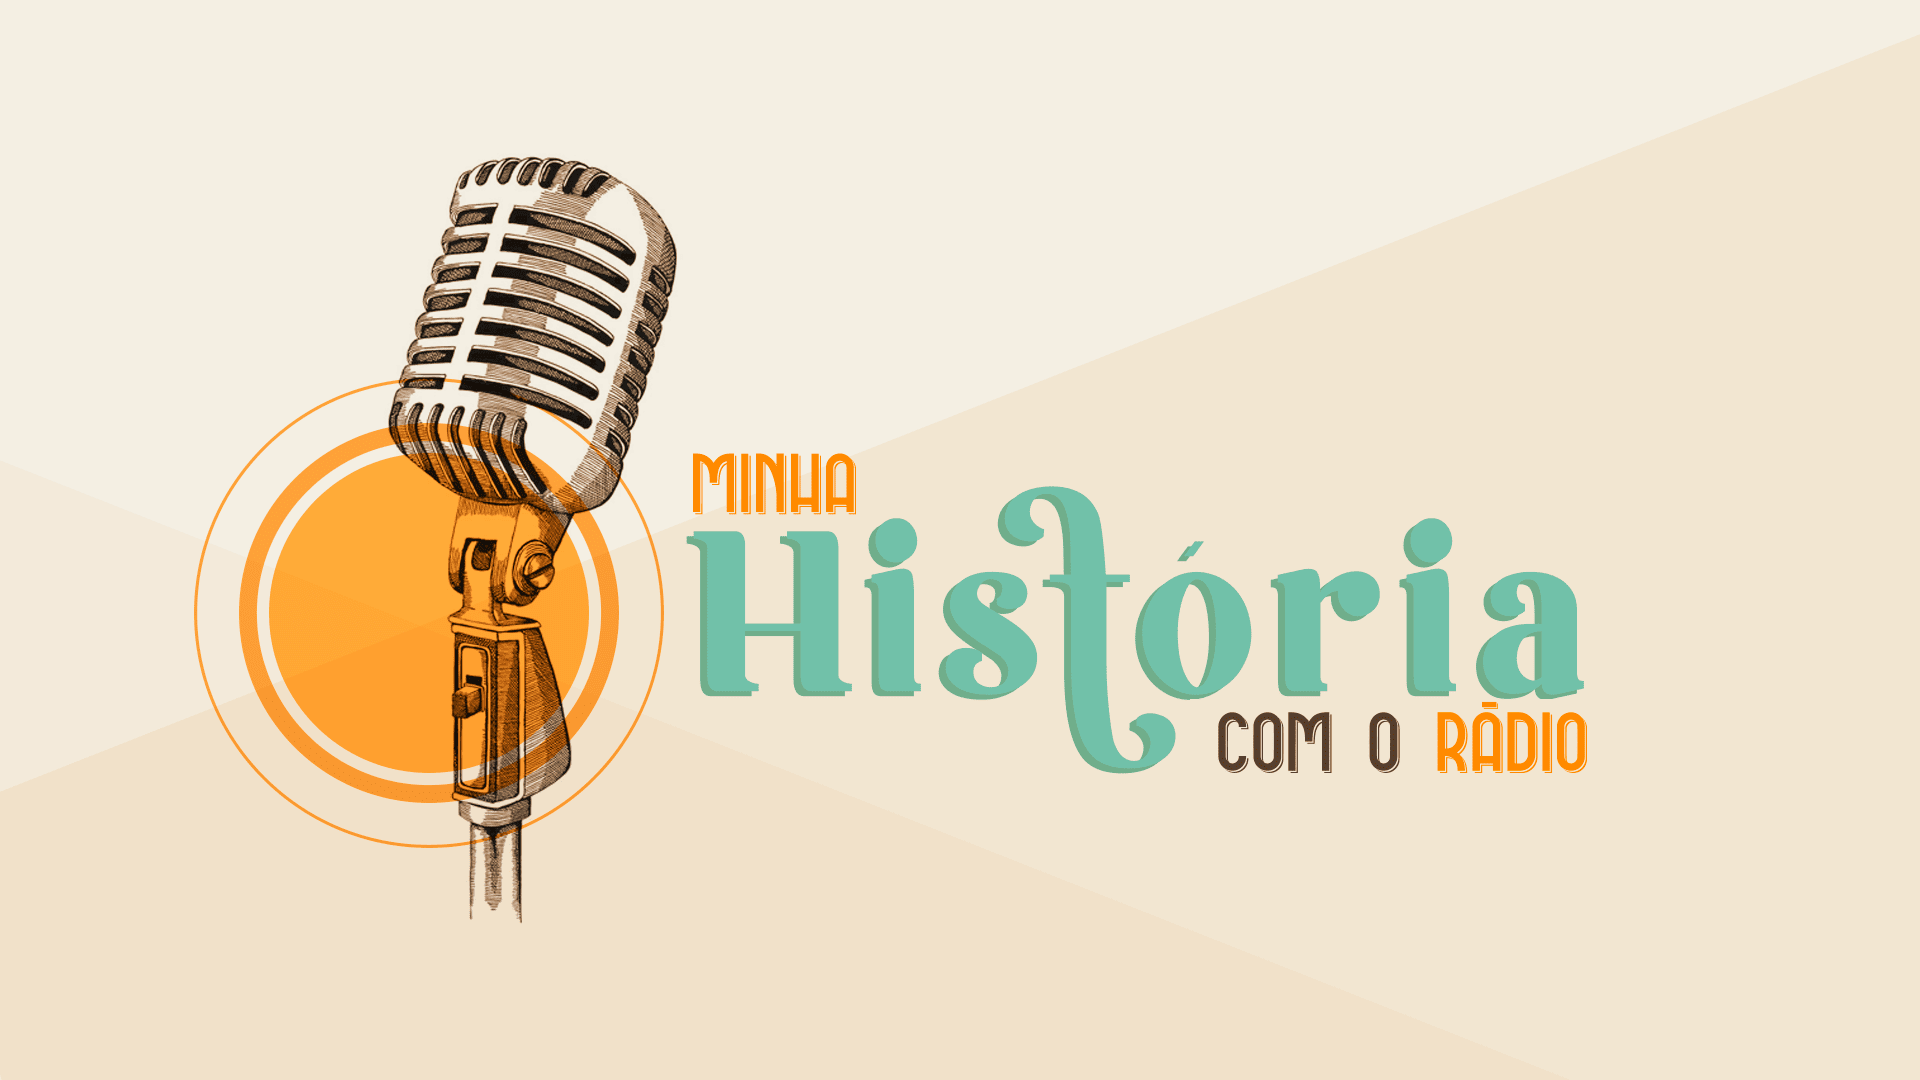 Rádio Aparecida lança “Minha História com o Rádio” em comemoração aos seus 70 anos